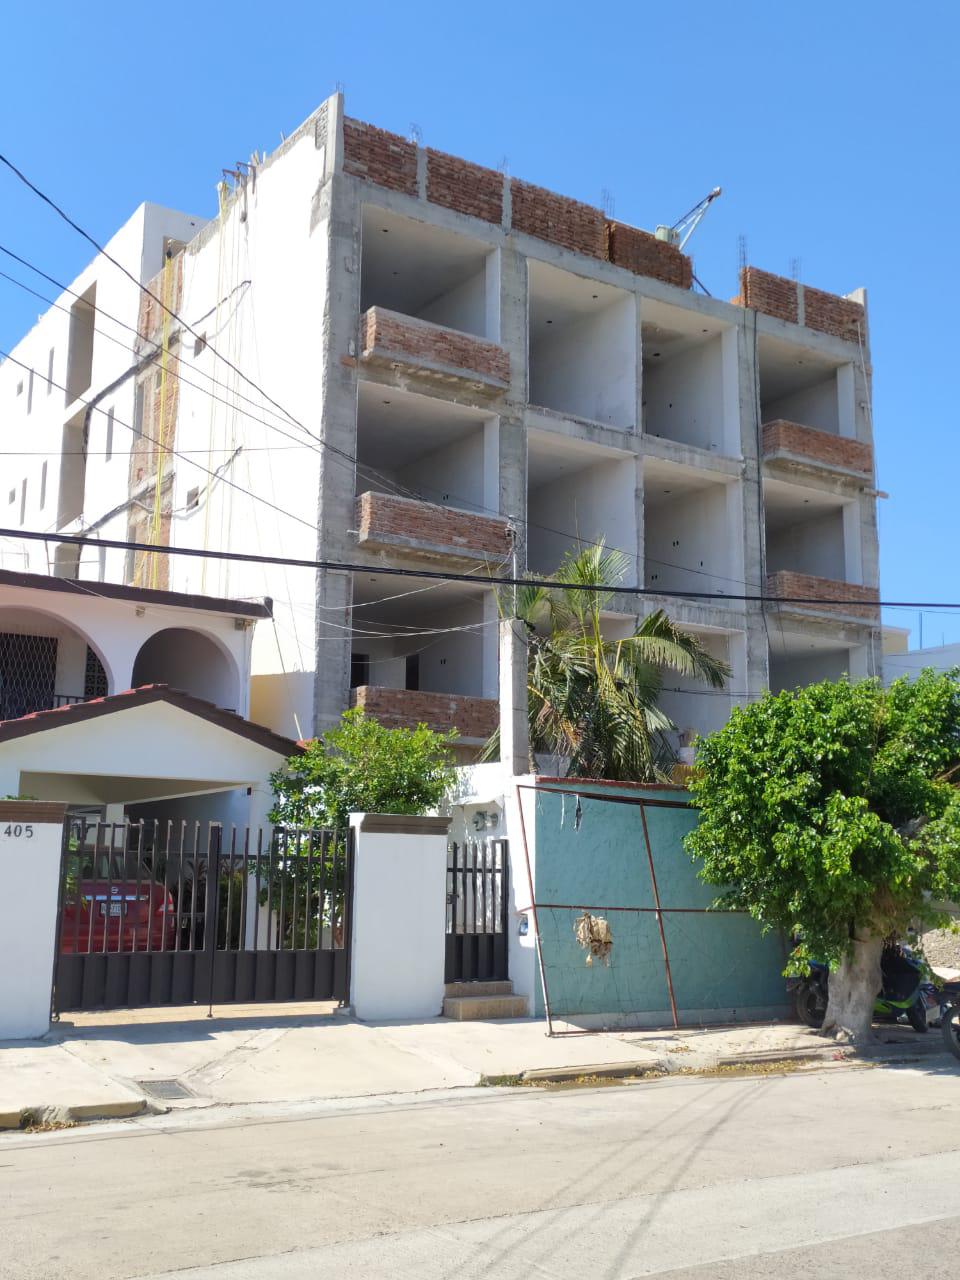 $!Prevén traer albañiles de otros estados para el ‘boom’ inmobiliario que hay en Mazatlán: Ingenieros